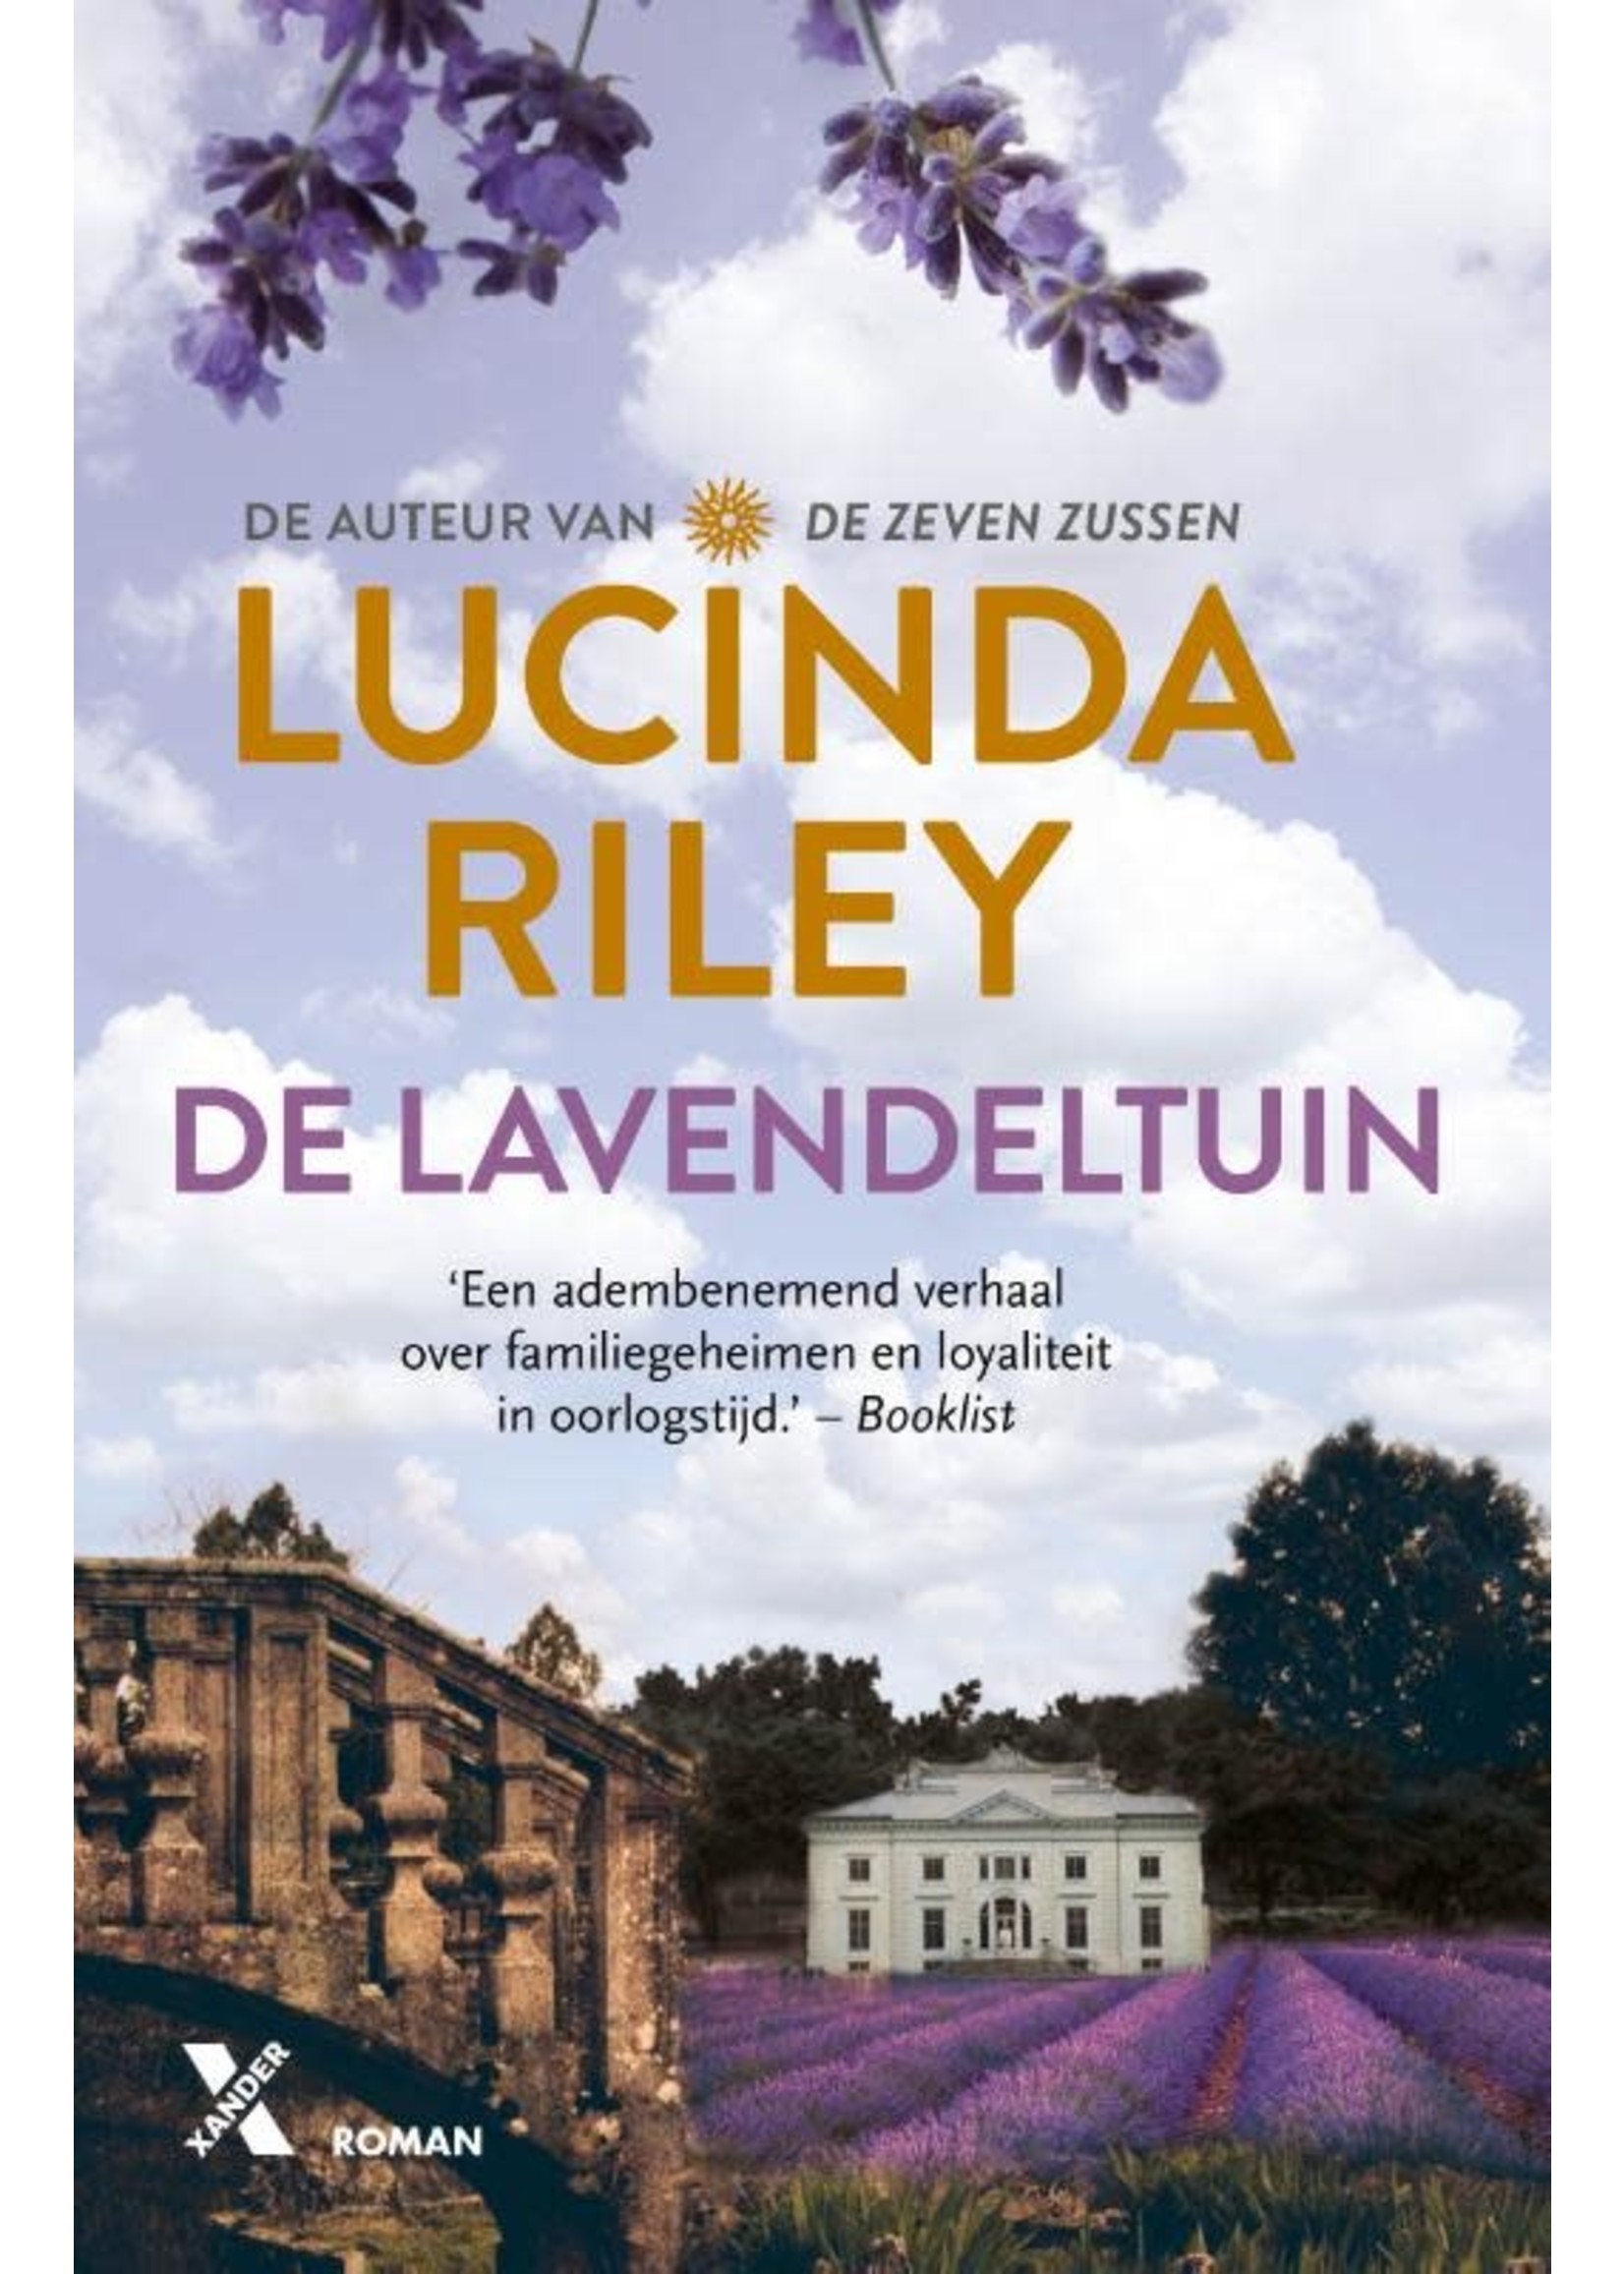 Boek, De Lavendeltuin, Lucinda Riley, Xander Uitgevers, 9789401611176